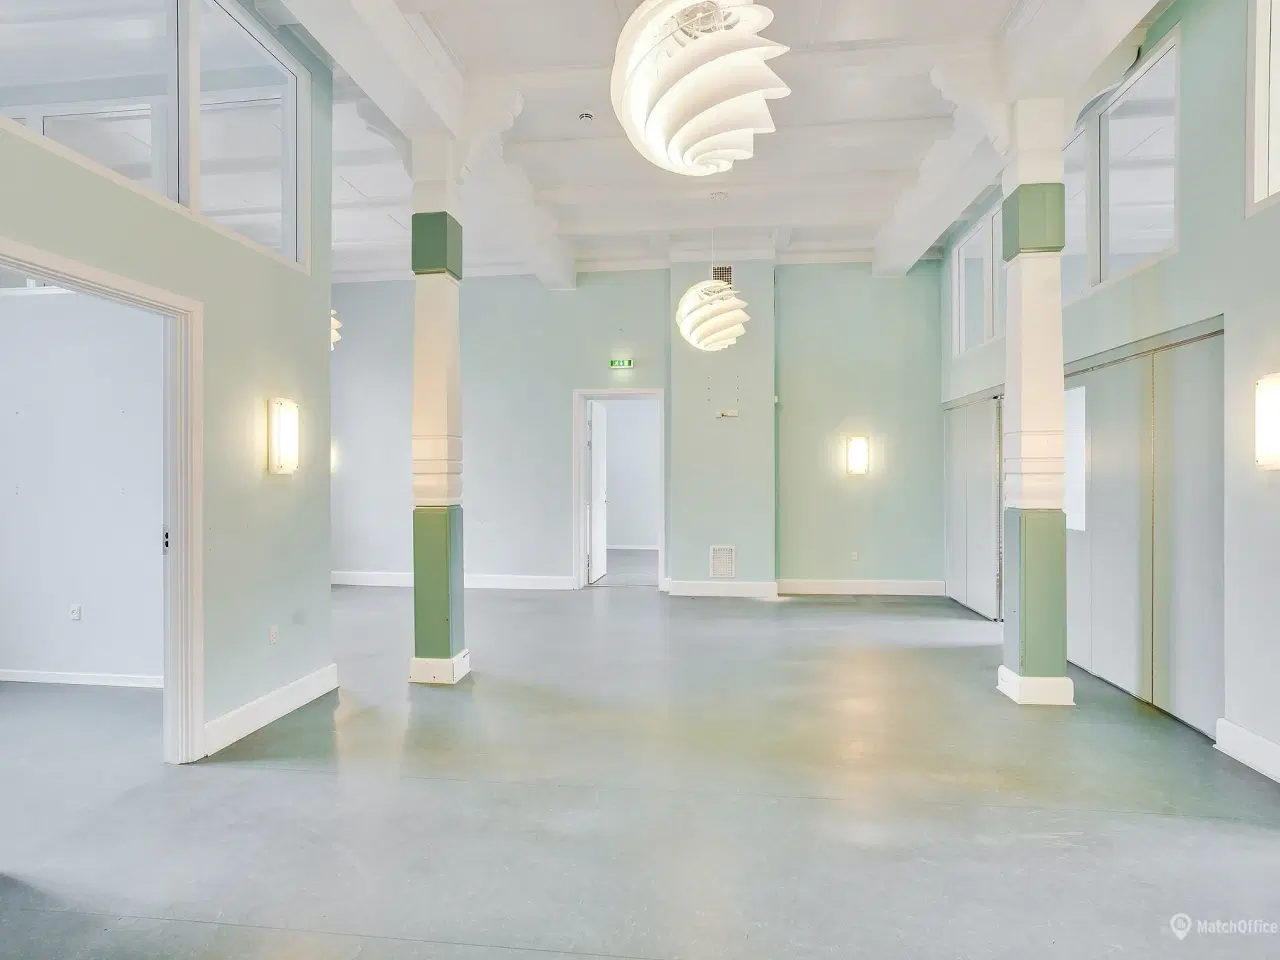 Billede 7 - Spændende kontorlokaler ved Indkøbscentret BROEN, i Esbjerg.